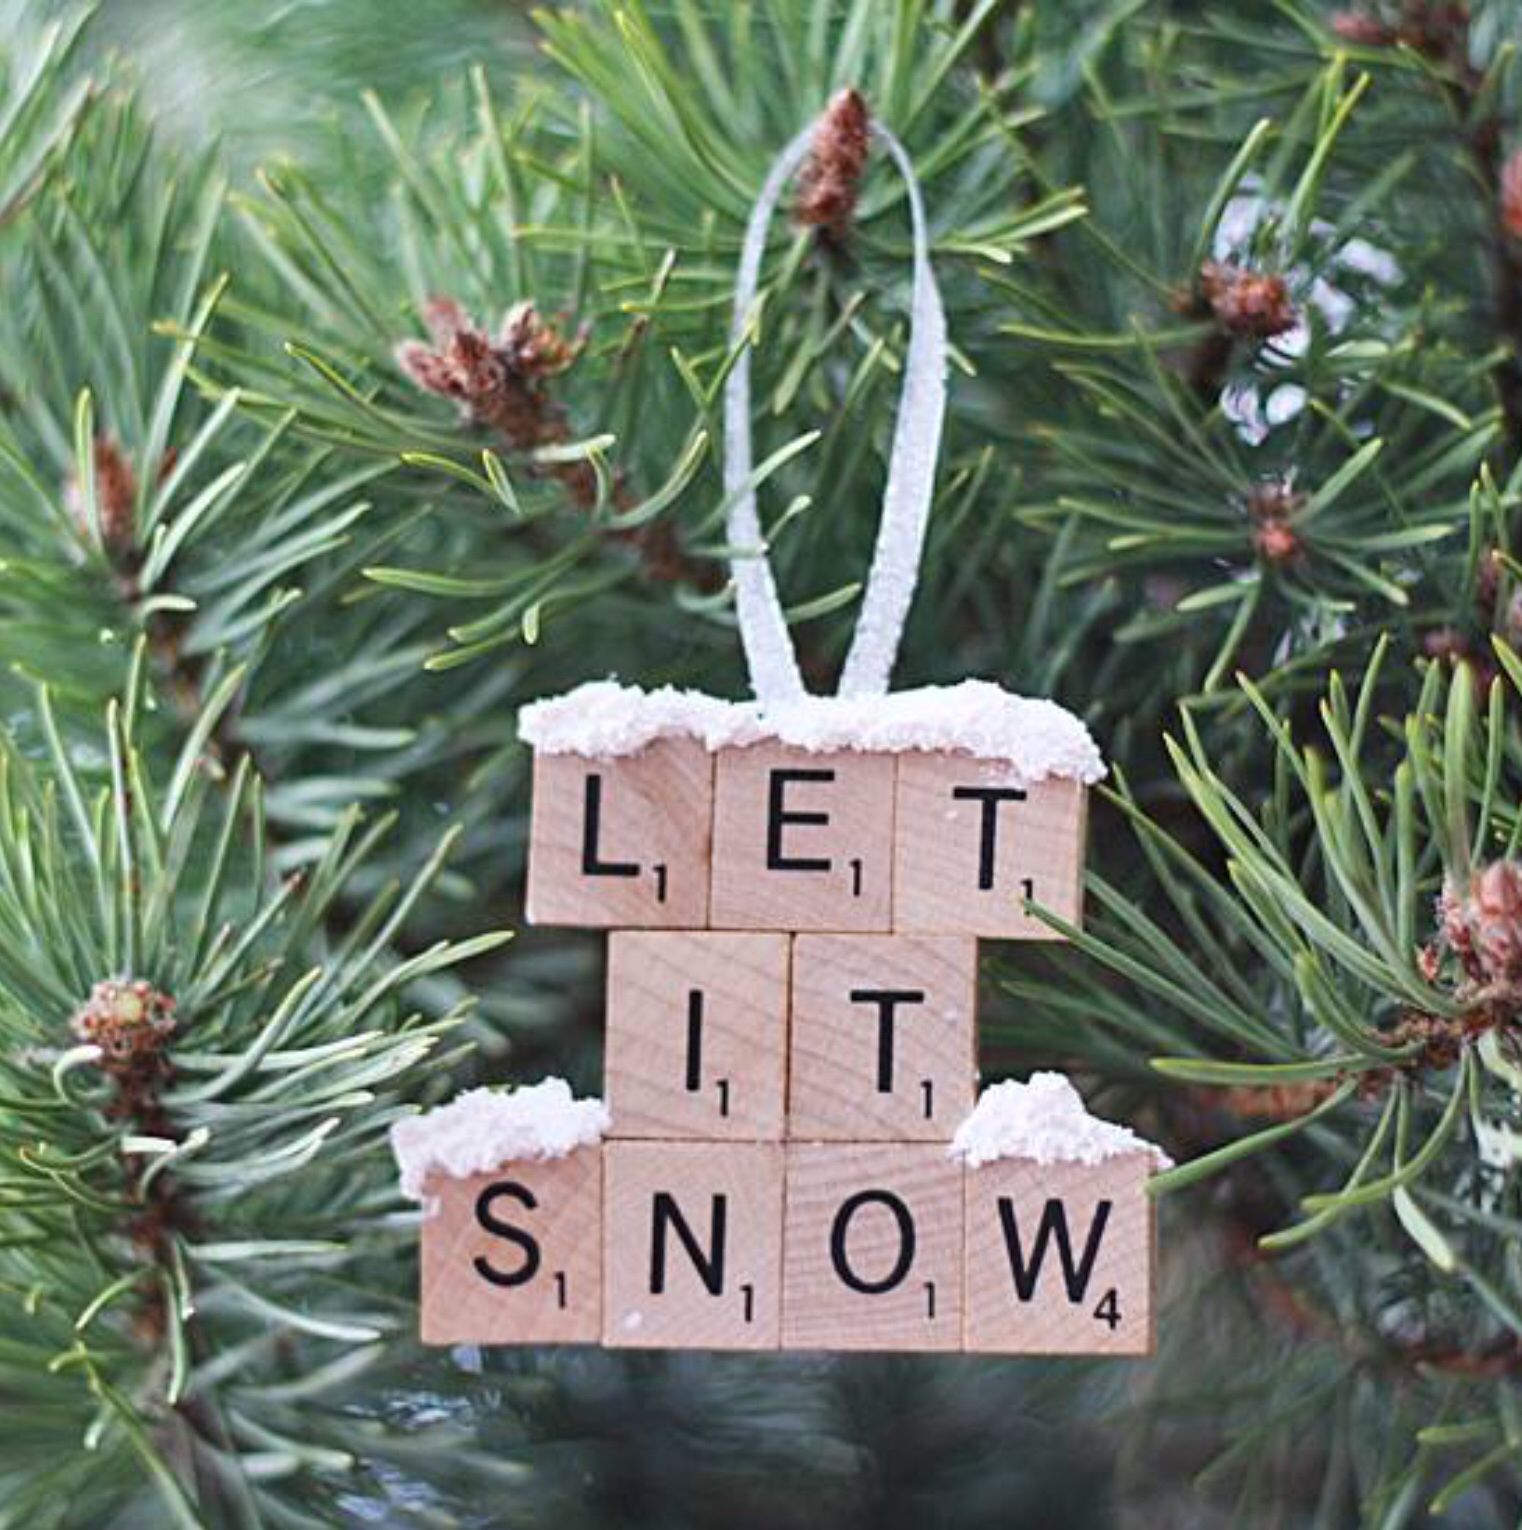 Bạn có thể sắp xếp các khối gỗ hình vuông nhỏ nhắn thành những dòng chữ, cụm từ theo chủ đề Giáng sinh như: Merry Christmas, Let it snow,... rồi treo lên cây thông.